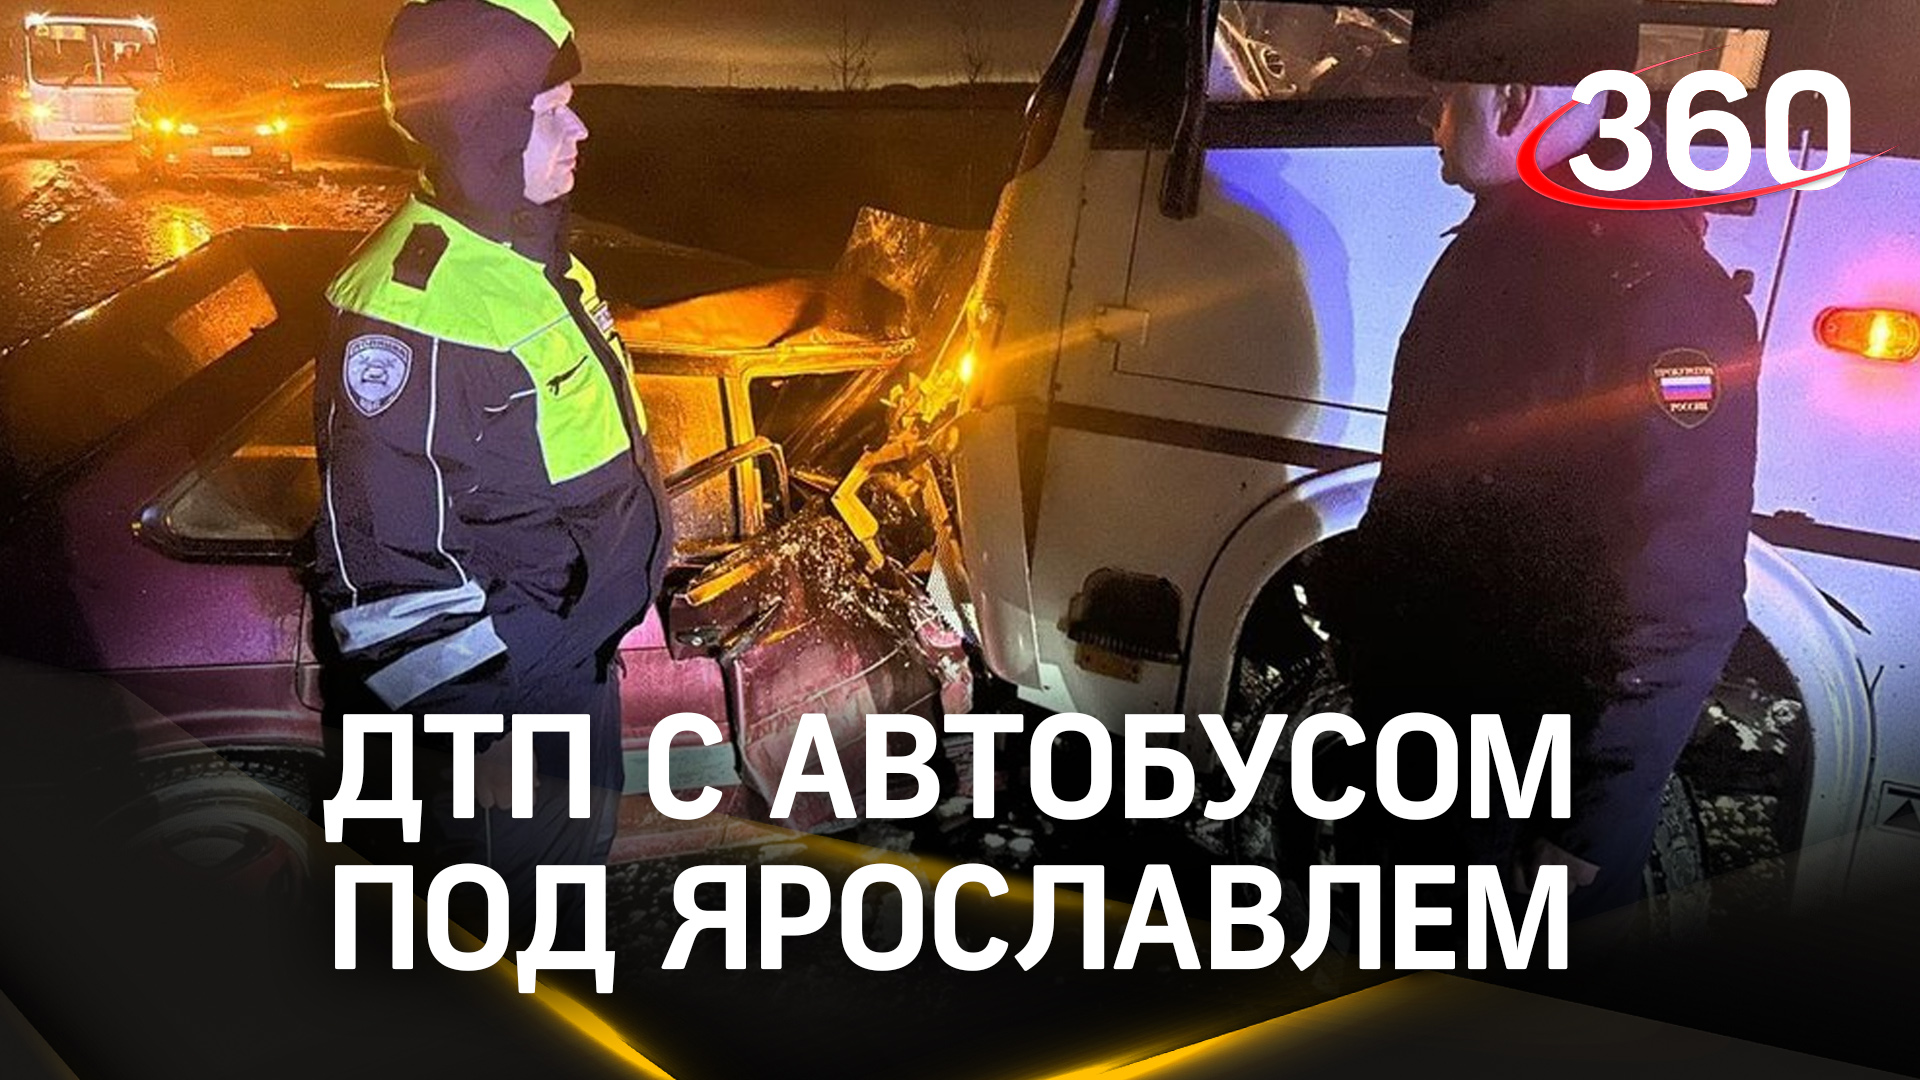 Шесть человек пострадали в ДТП под Ярославлем. Автобус столкнулся с легковушкой. Кадры с места ЧП